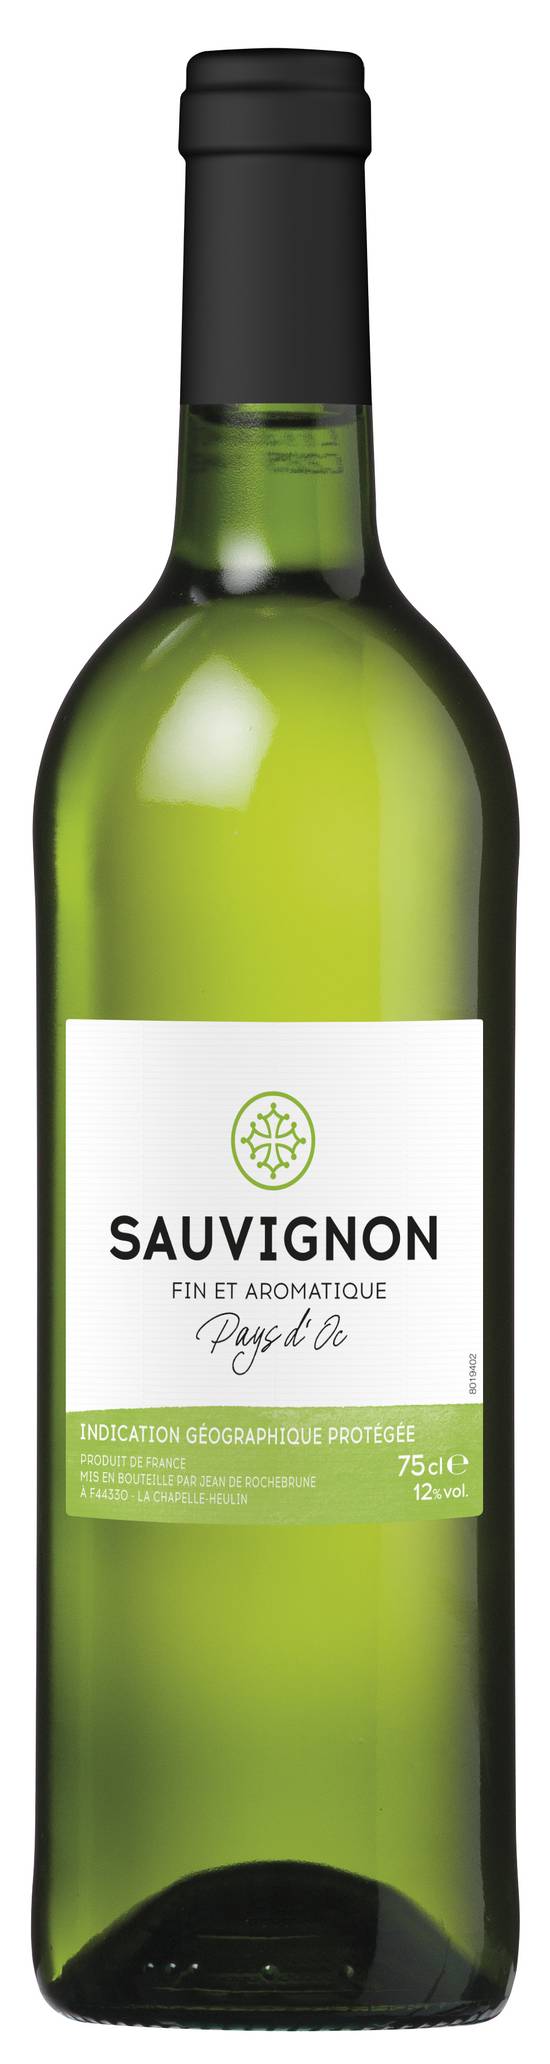 Les Produits U - Vin blanc IGP pays d'oc sauvignon (750 ml)